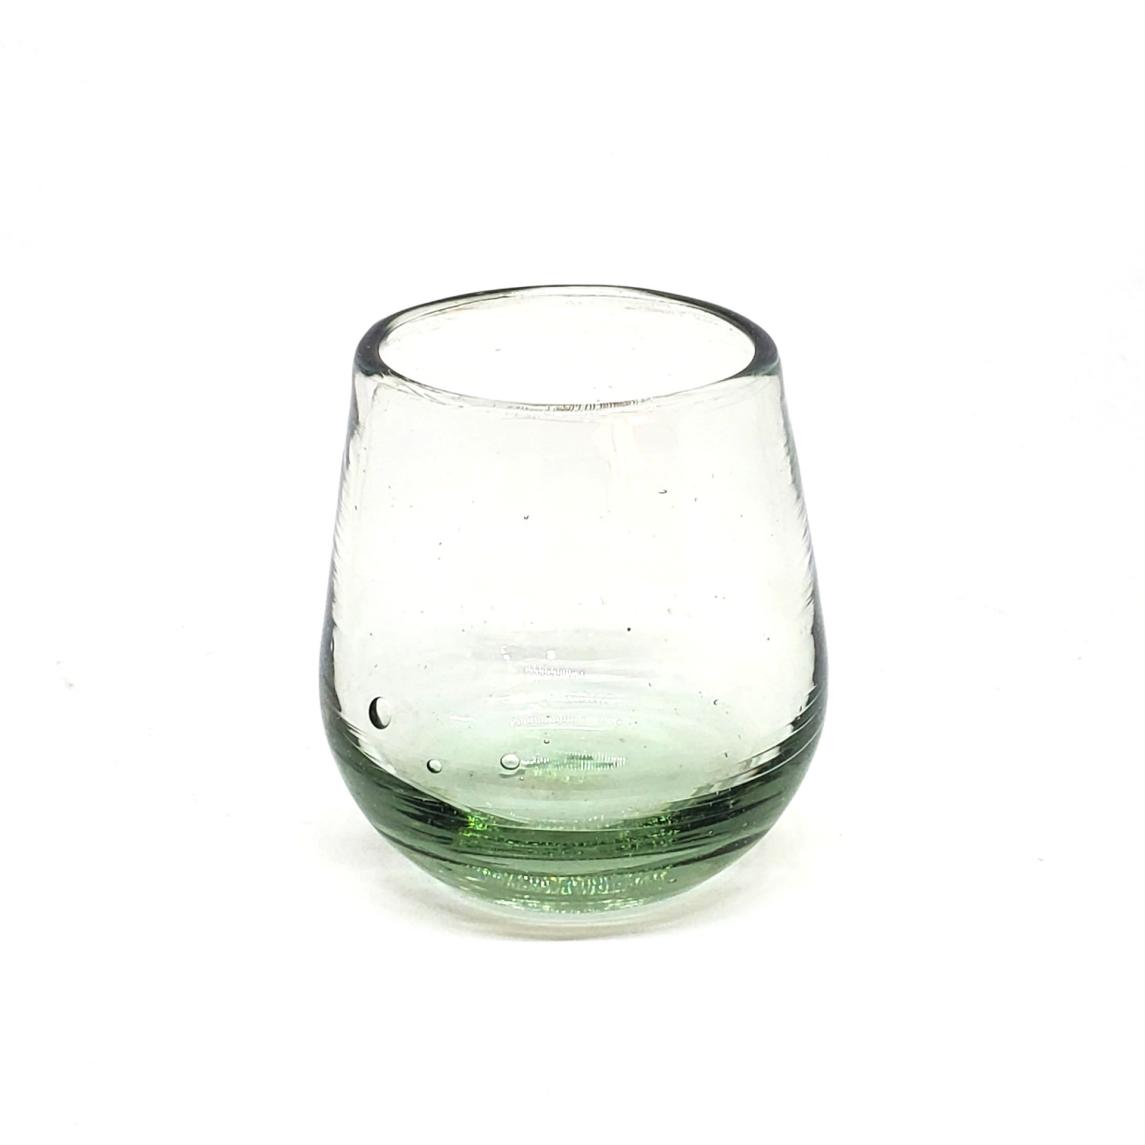 Ofertas / Vasos Roly Poly Transparente (Juego de 6) / Nuestros vasos transparentes son fabricados uno por uno a base de vidrio reciclado, hacindolos obras de arte nicas.